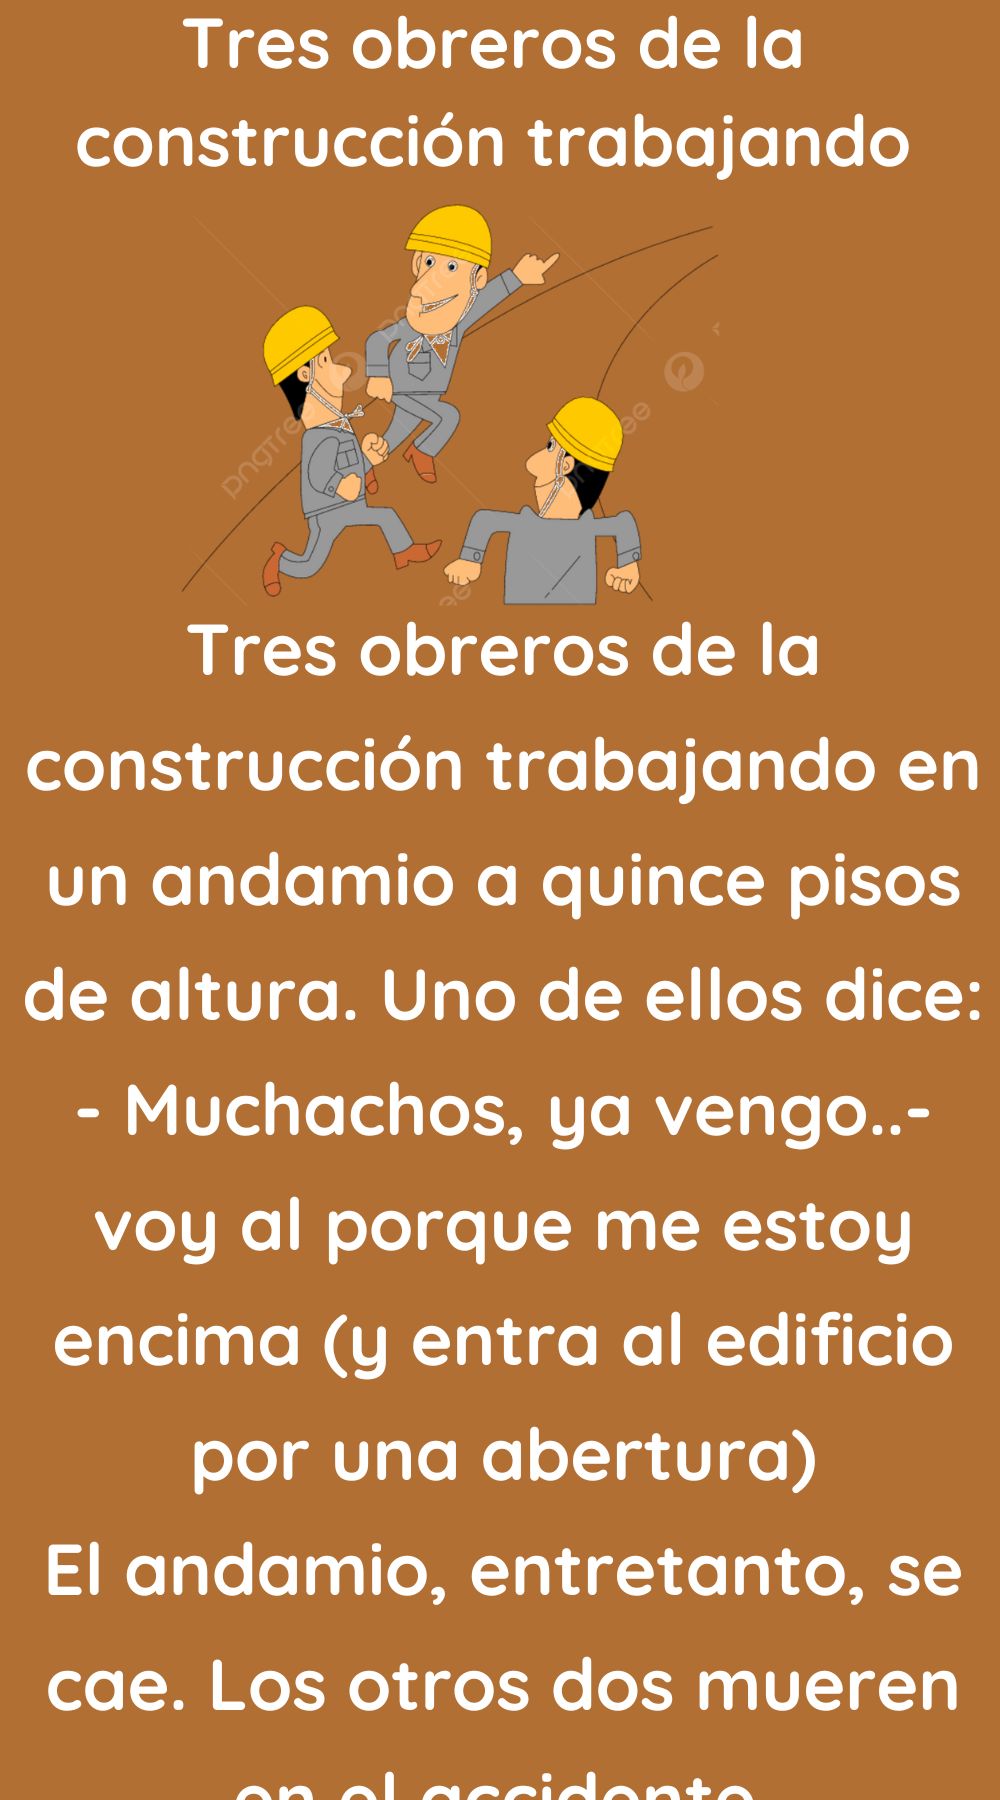 Tres obreros de la construcción trabajando